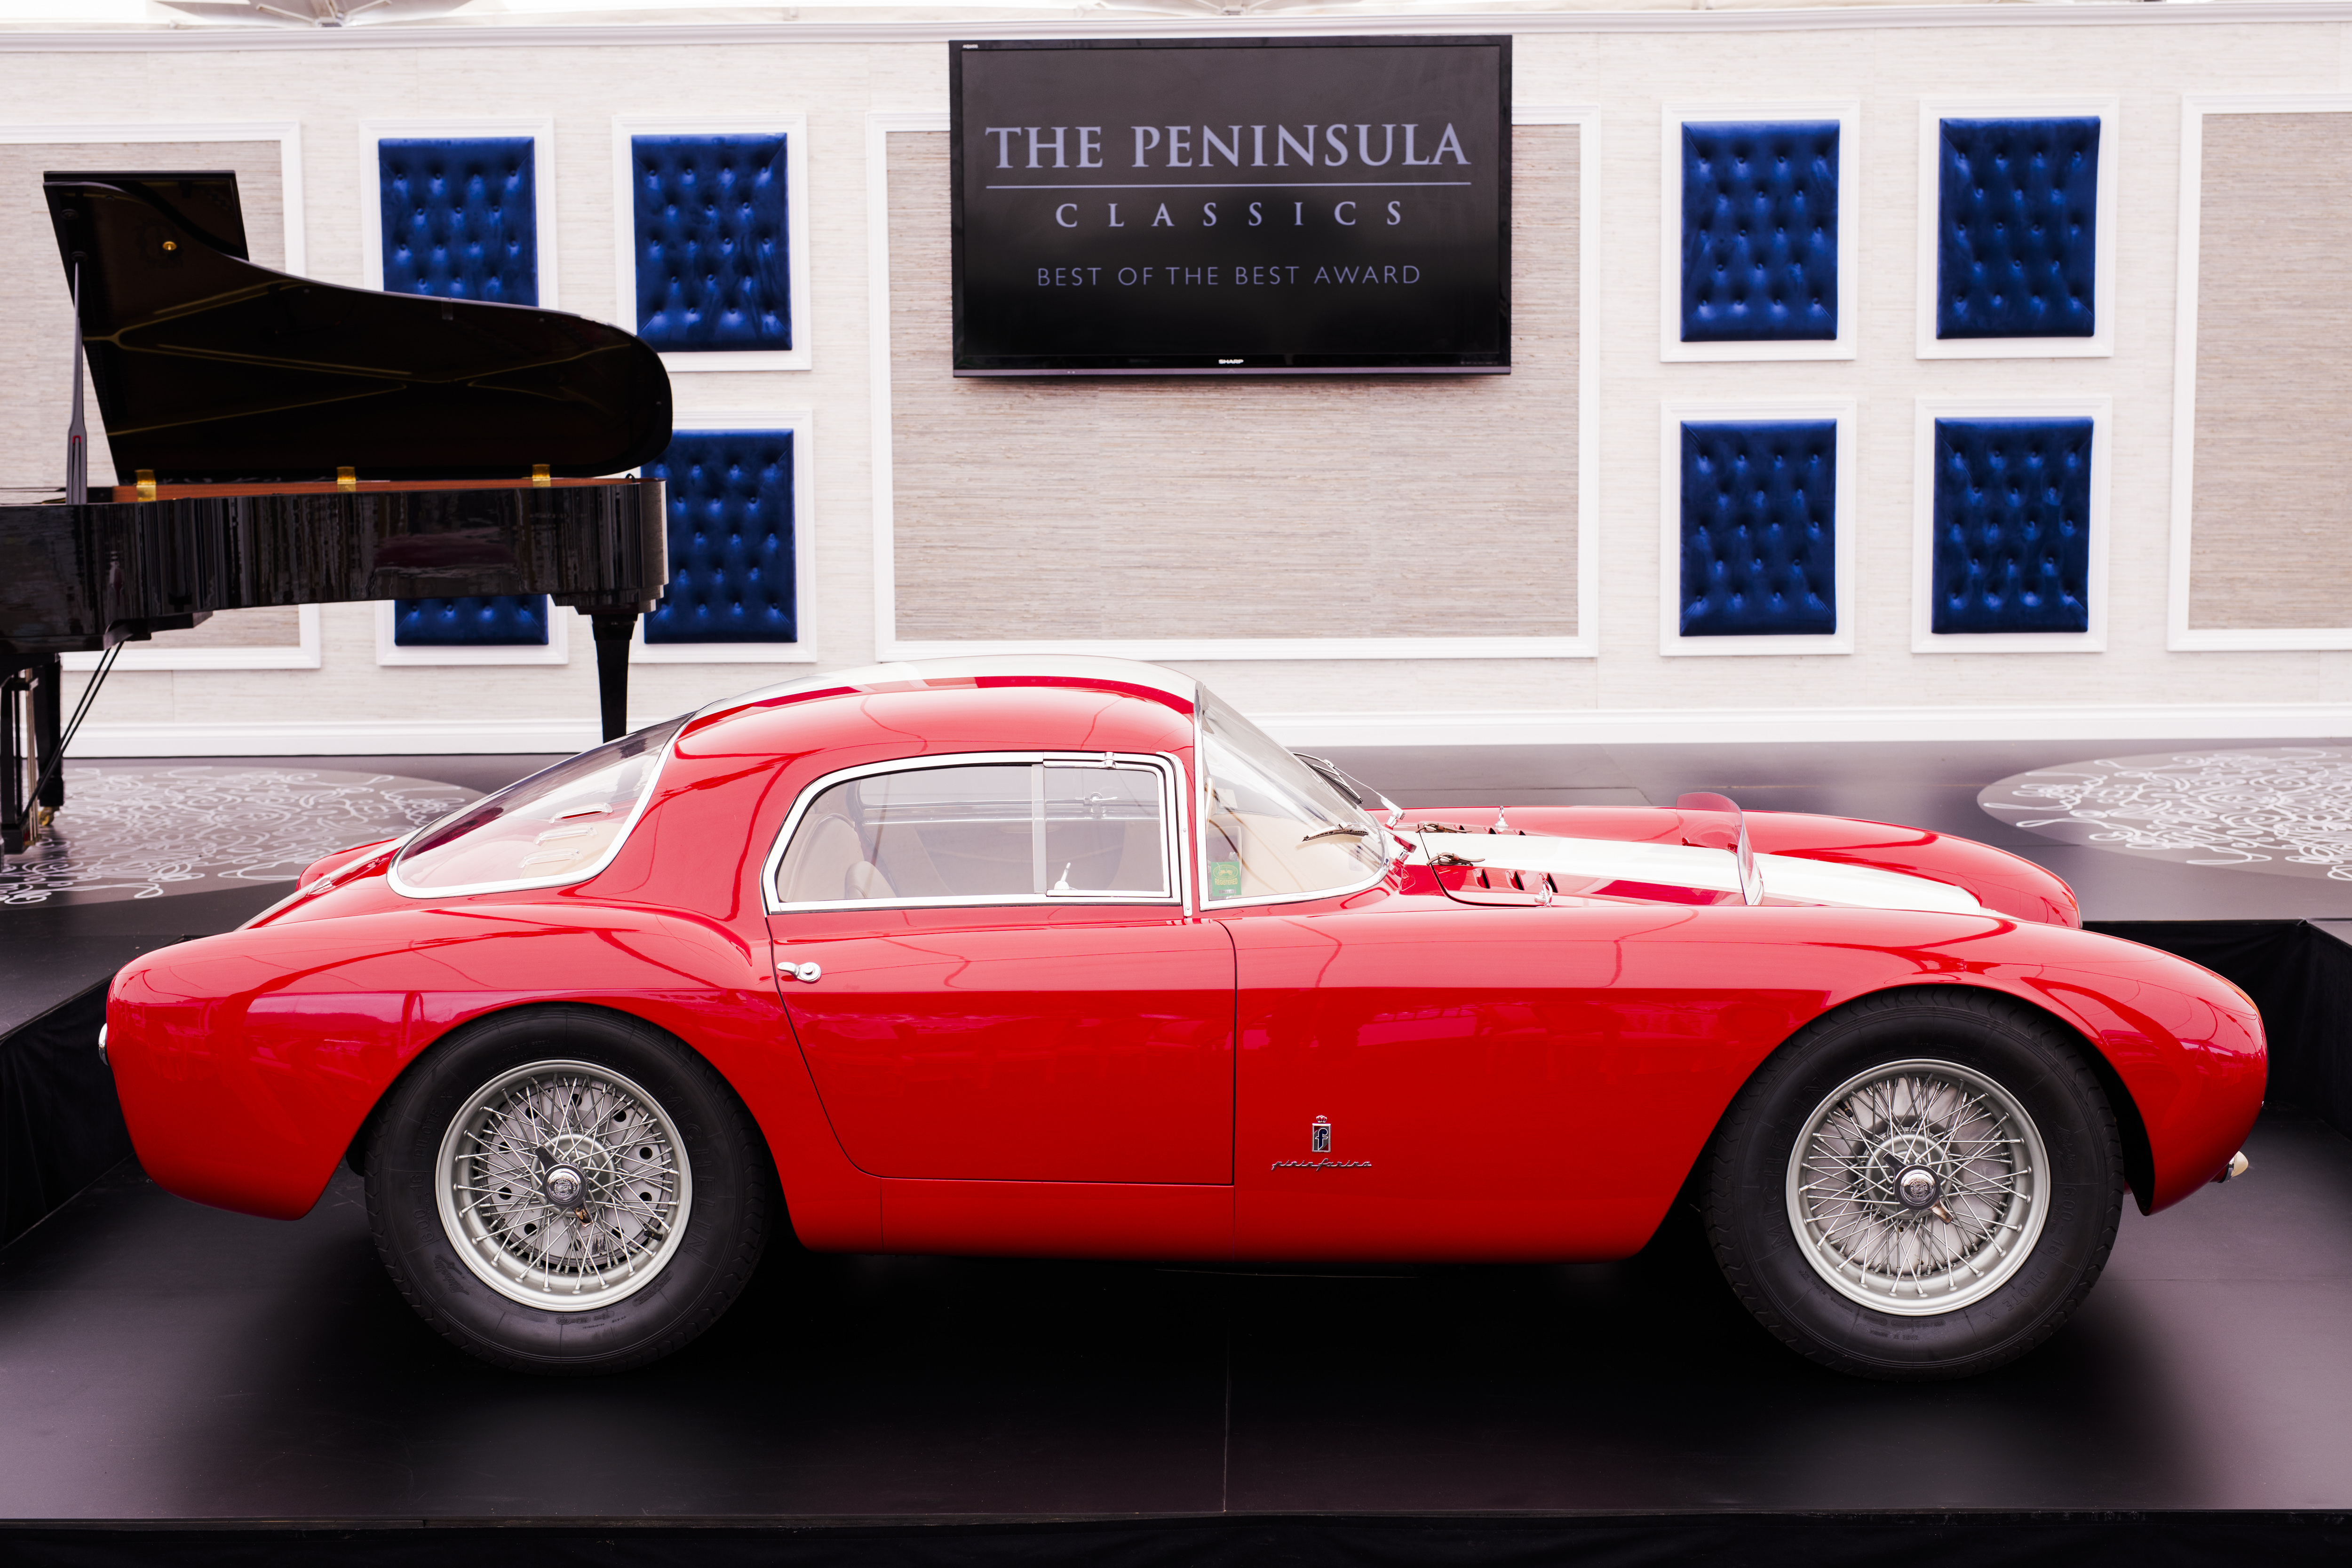 ザ ペニンシュラ クラシックス ベスト オブ ザ ベスト アワードの16年の受賞車はピニンファリーナの1954年製マセラティa6gcs 53ベルリネッタ Business Wire